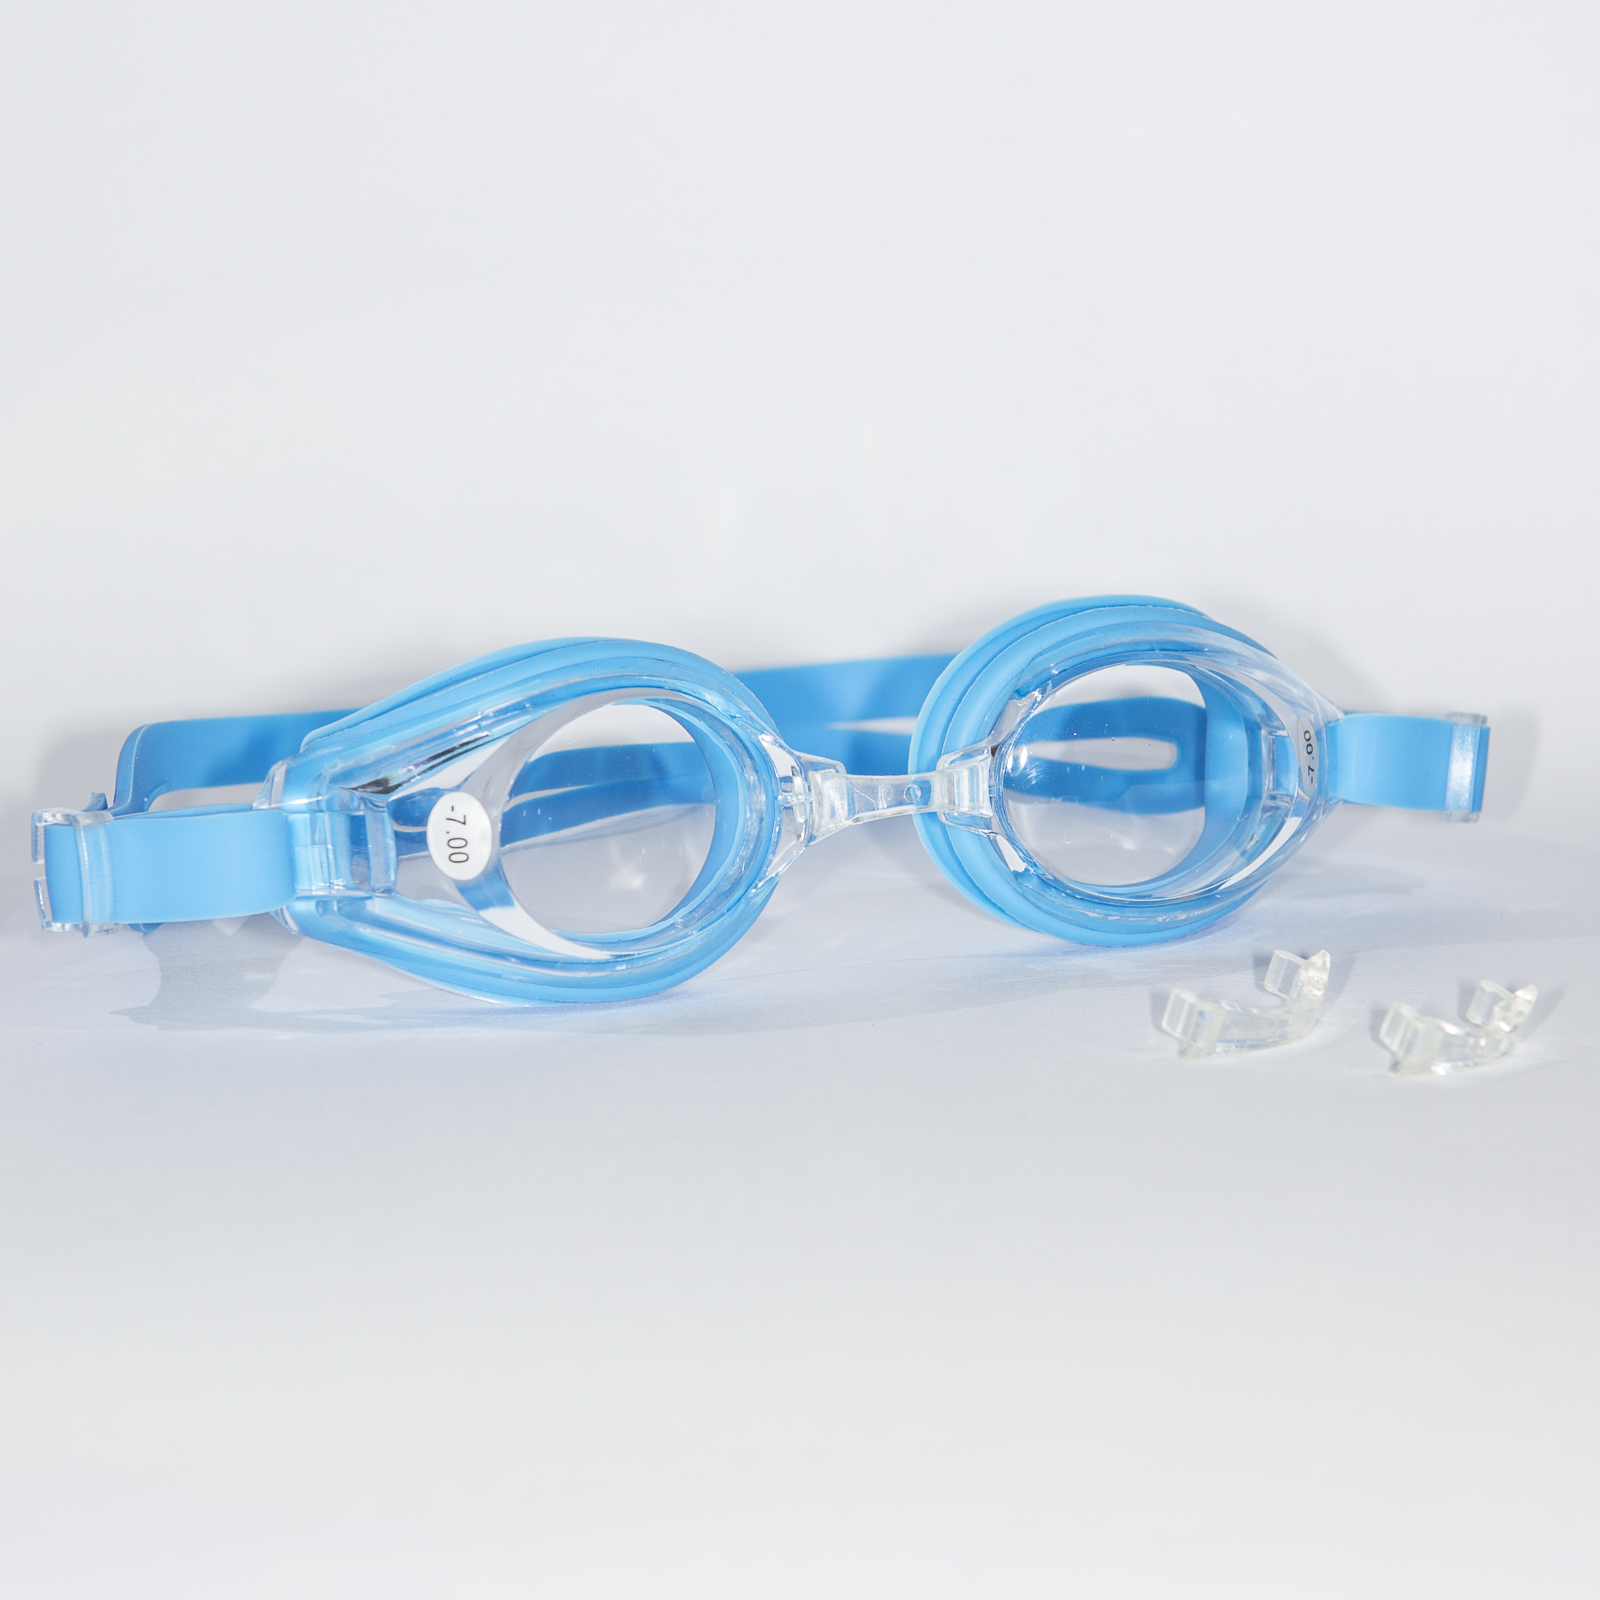 Zwembrillen op sterkte - EyeQua Swimwear